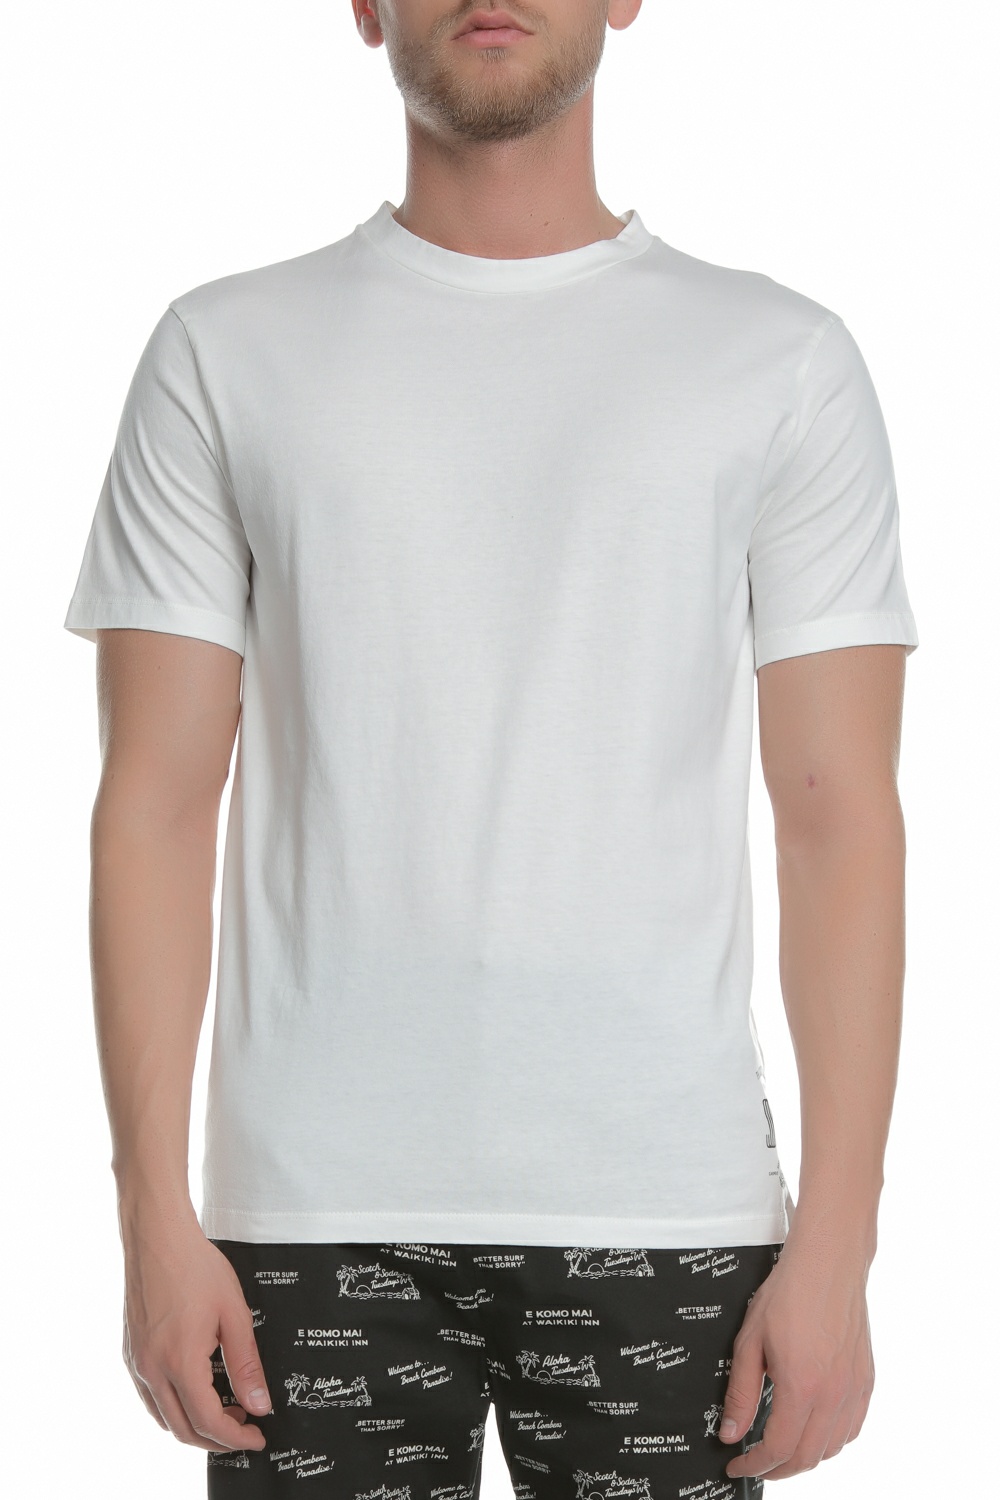 Ανδρικά/Ρούχα/Μπλούζες/Κοντομάνικες SCOTCH & SODA - Ανδρική κοντομάνικη μπλούζα SCOTCH & SODA λευκή